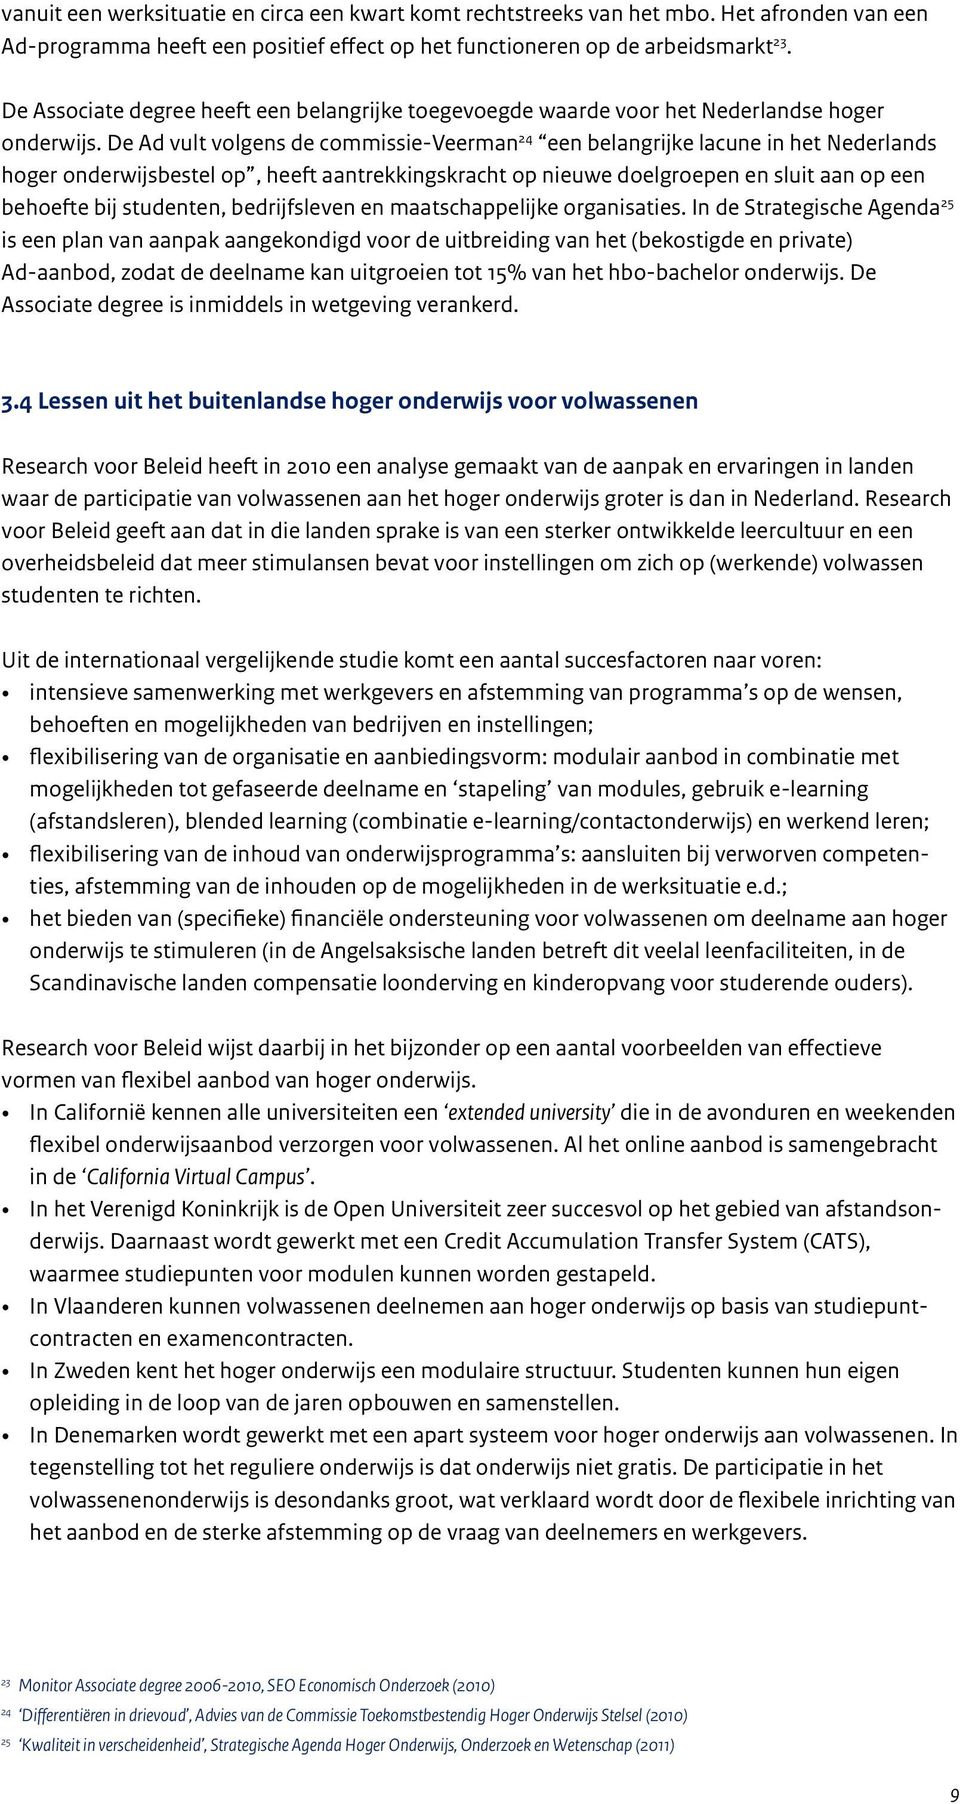 De Ad vult volgens de commissie-veerman 24 een belangrijke lacune in het Nederlands hoger onderwijsbestel op, heeft aantrekkingskracht op nieuwe doelgroepen en sluit aan op een behoefte bij